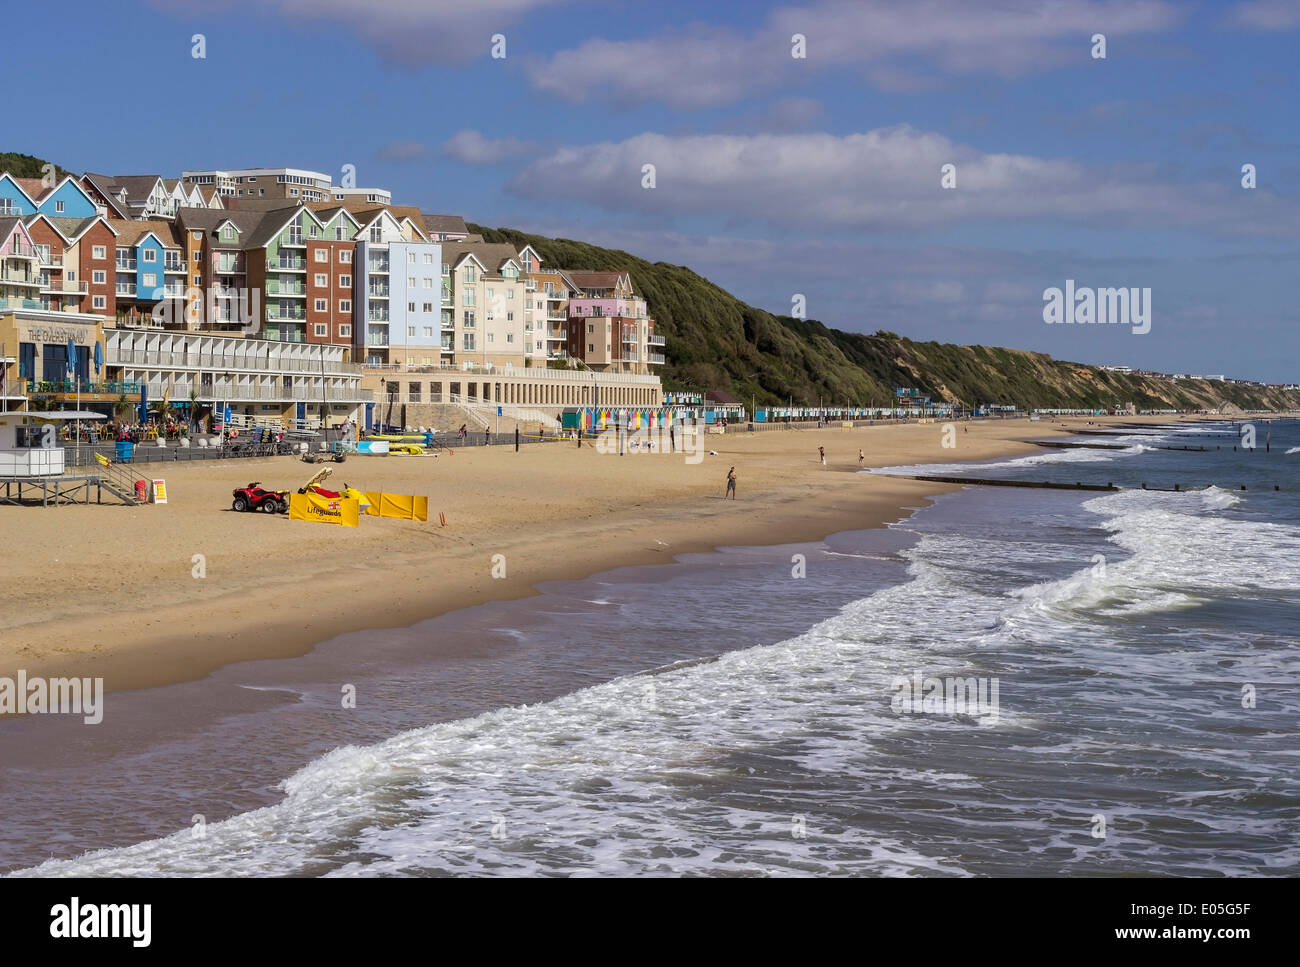 Boscombe plage et de la promenade de vacances, appartements et commerces, près de Bournemouth, Dorset, England, UK Banque D'Images